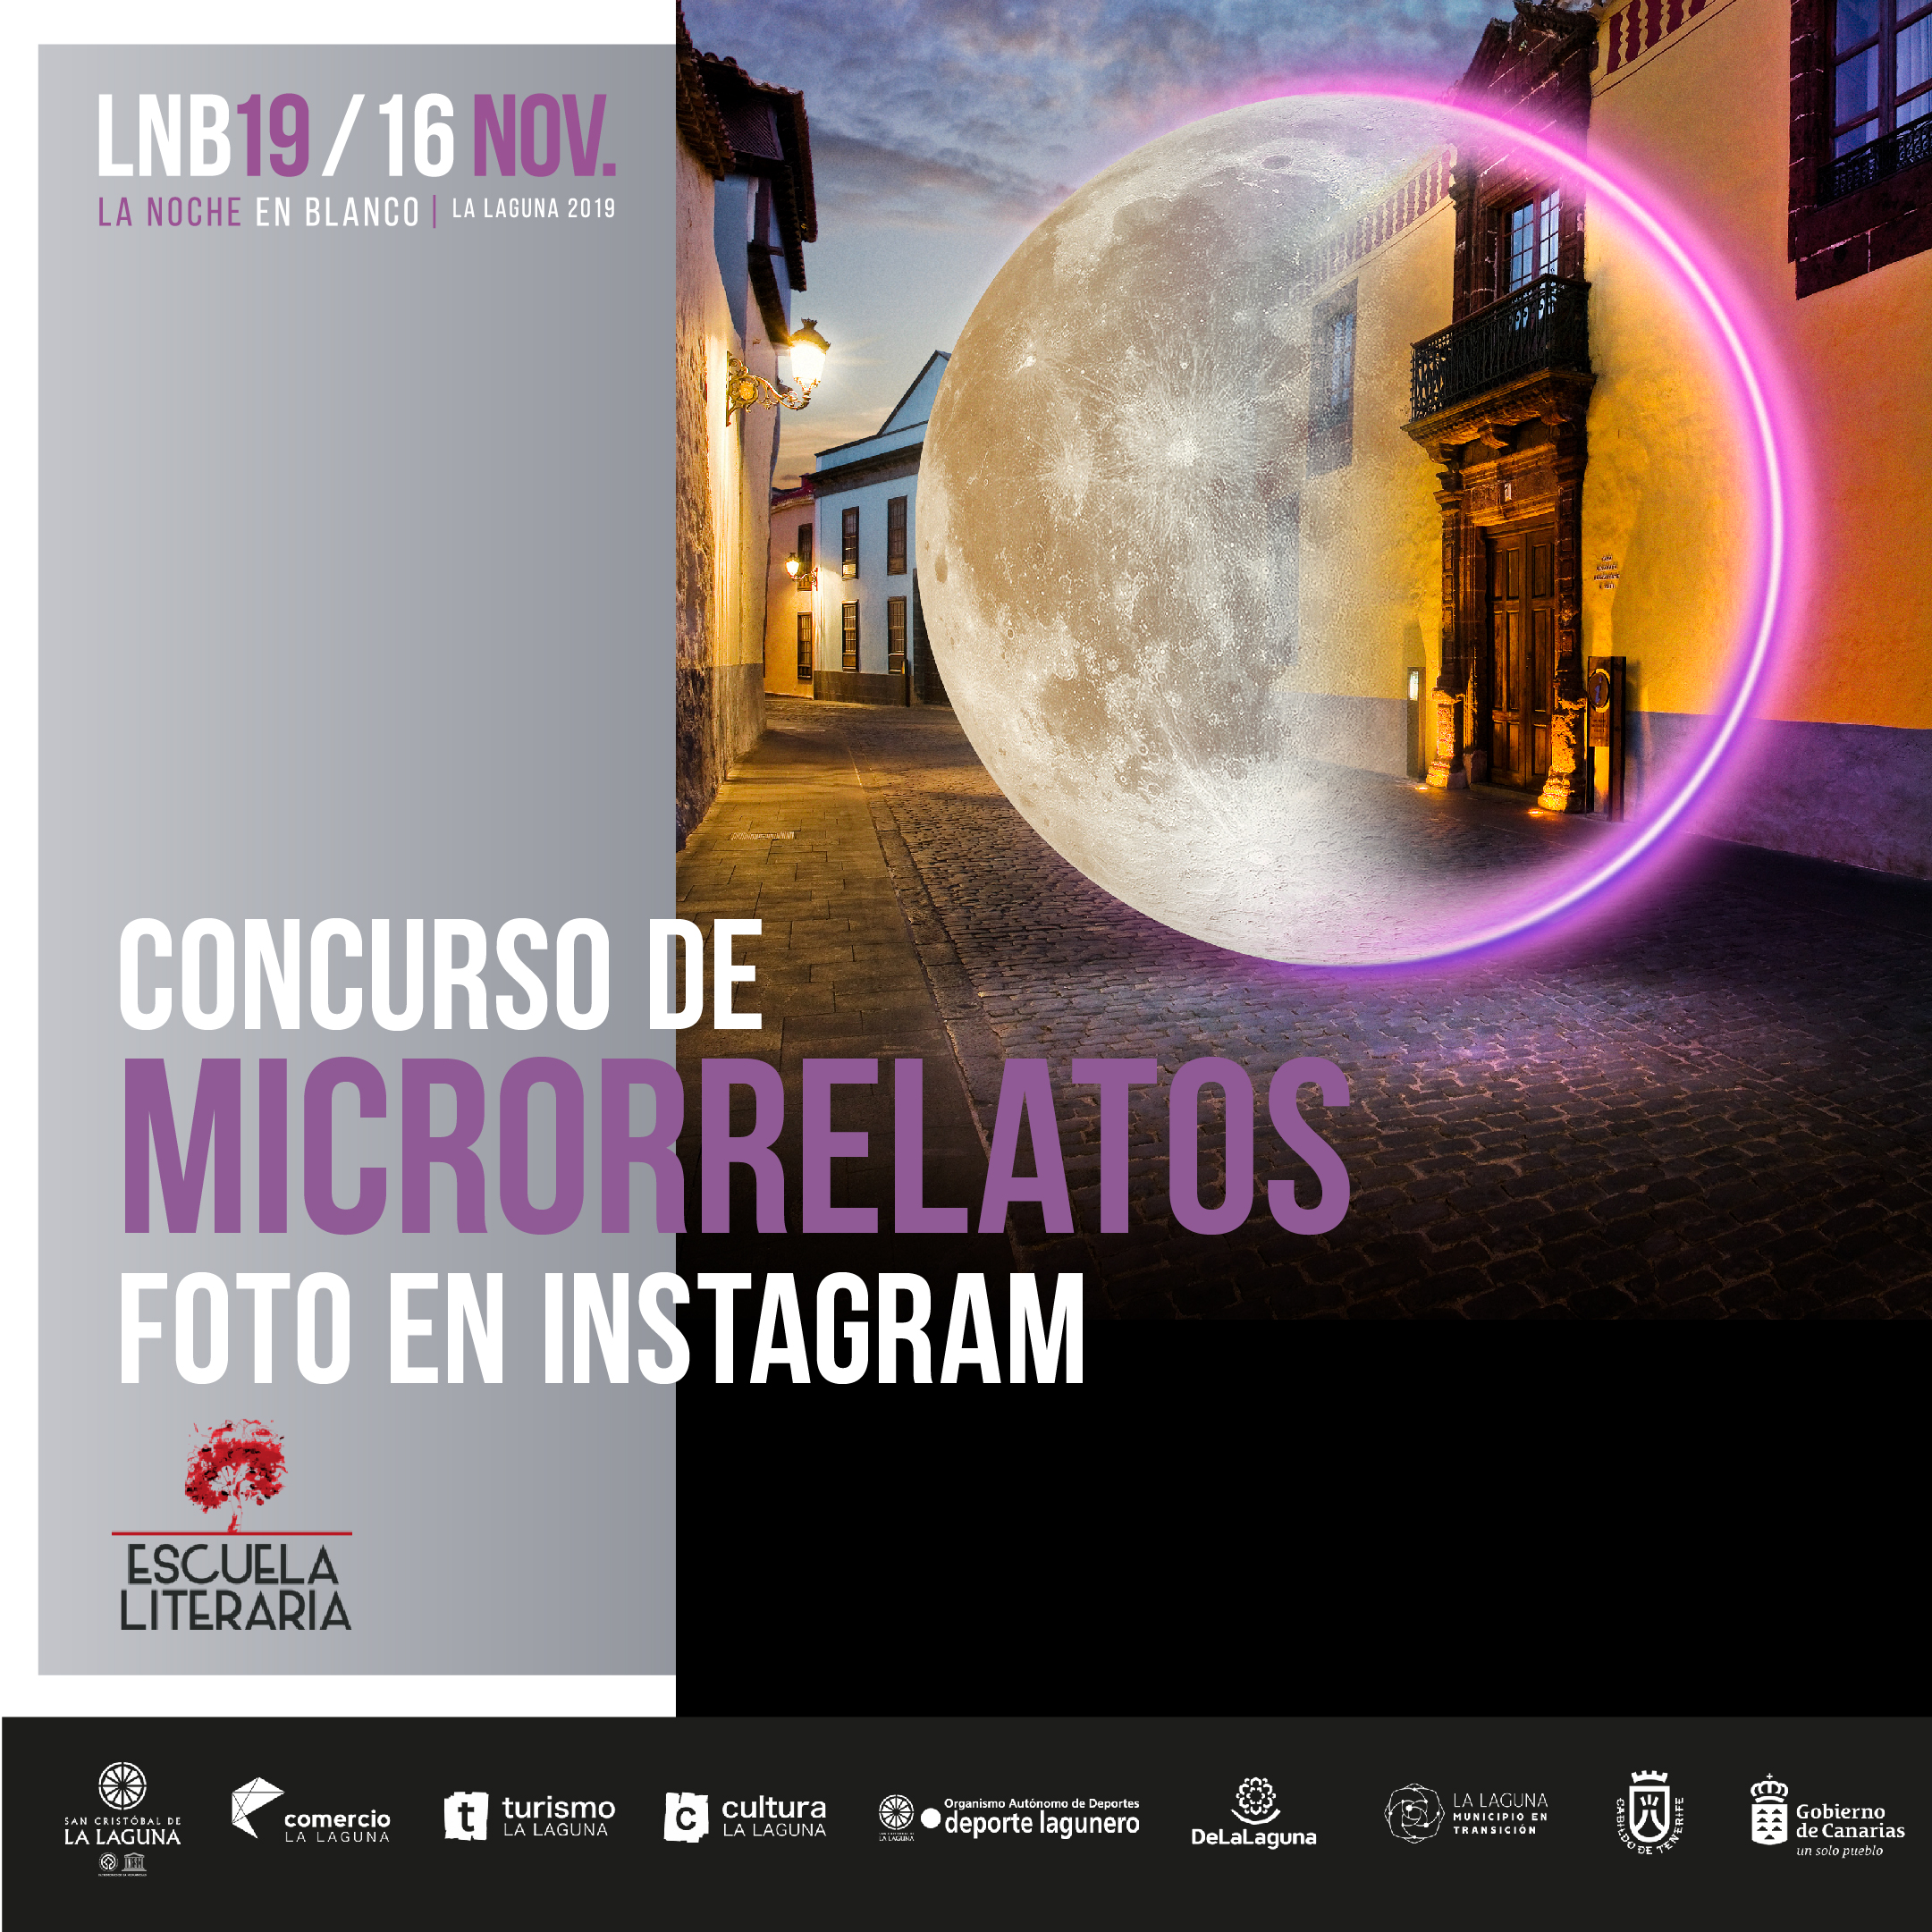 CONCURSO DE MICRORRELATOS/FOTO POR INSTAGRAM DE LA NOCHE EN BLANCO 2019 DE LA LAGUNA